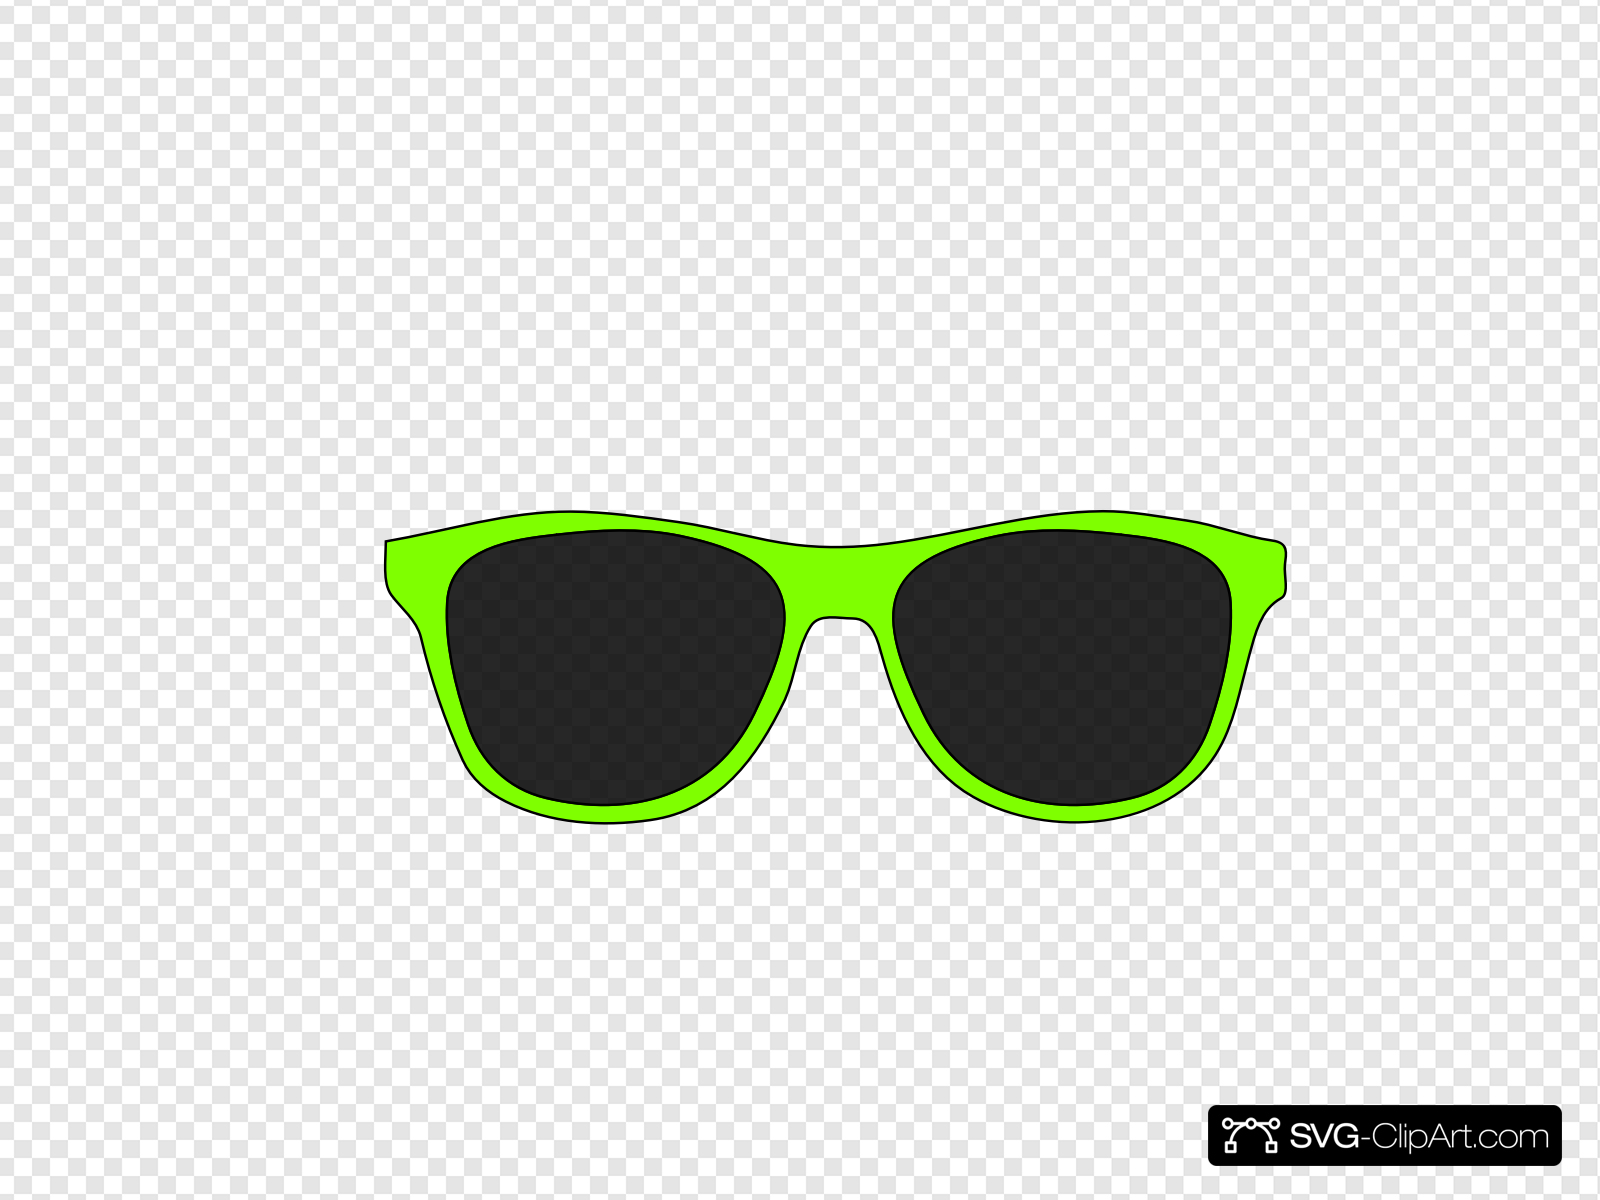 Green sunglasses clip.